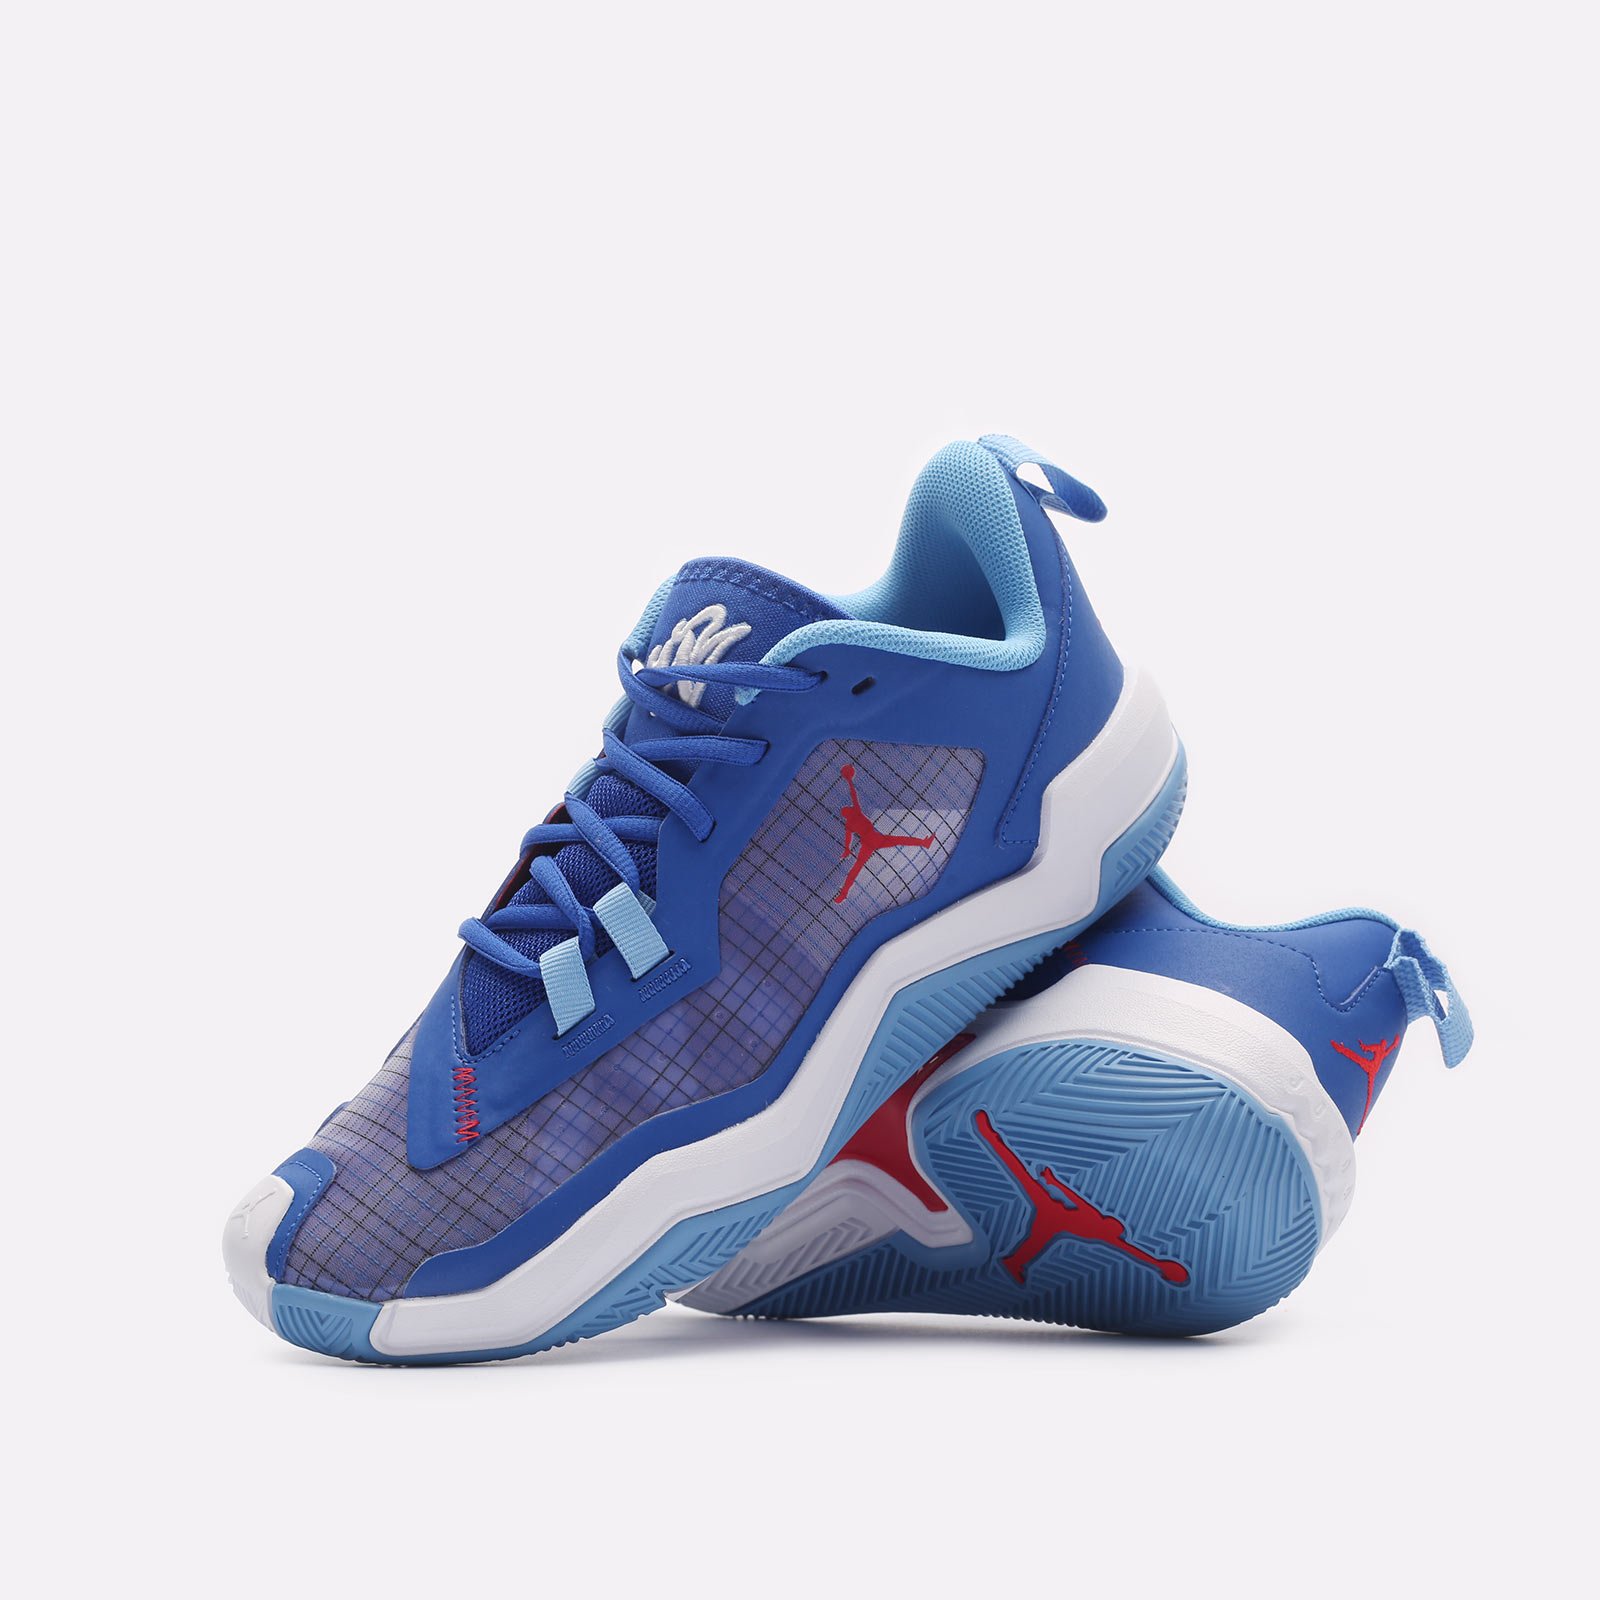 мужские синие баскетбольные кроссовки Jordan One Take 4 DO7193-400 - цена, описание, фото 2